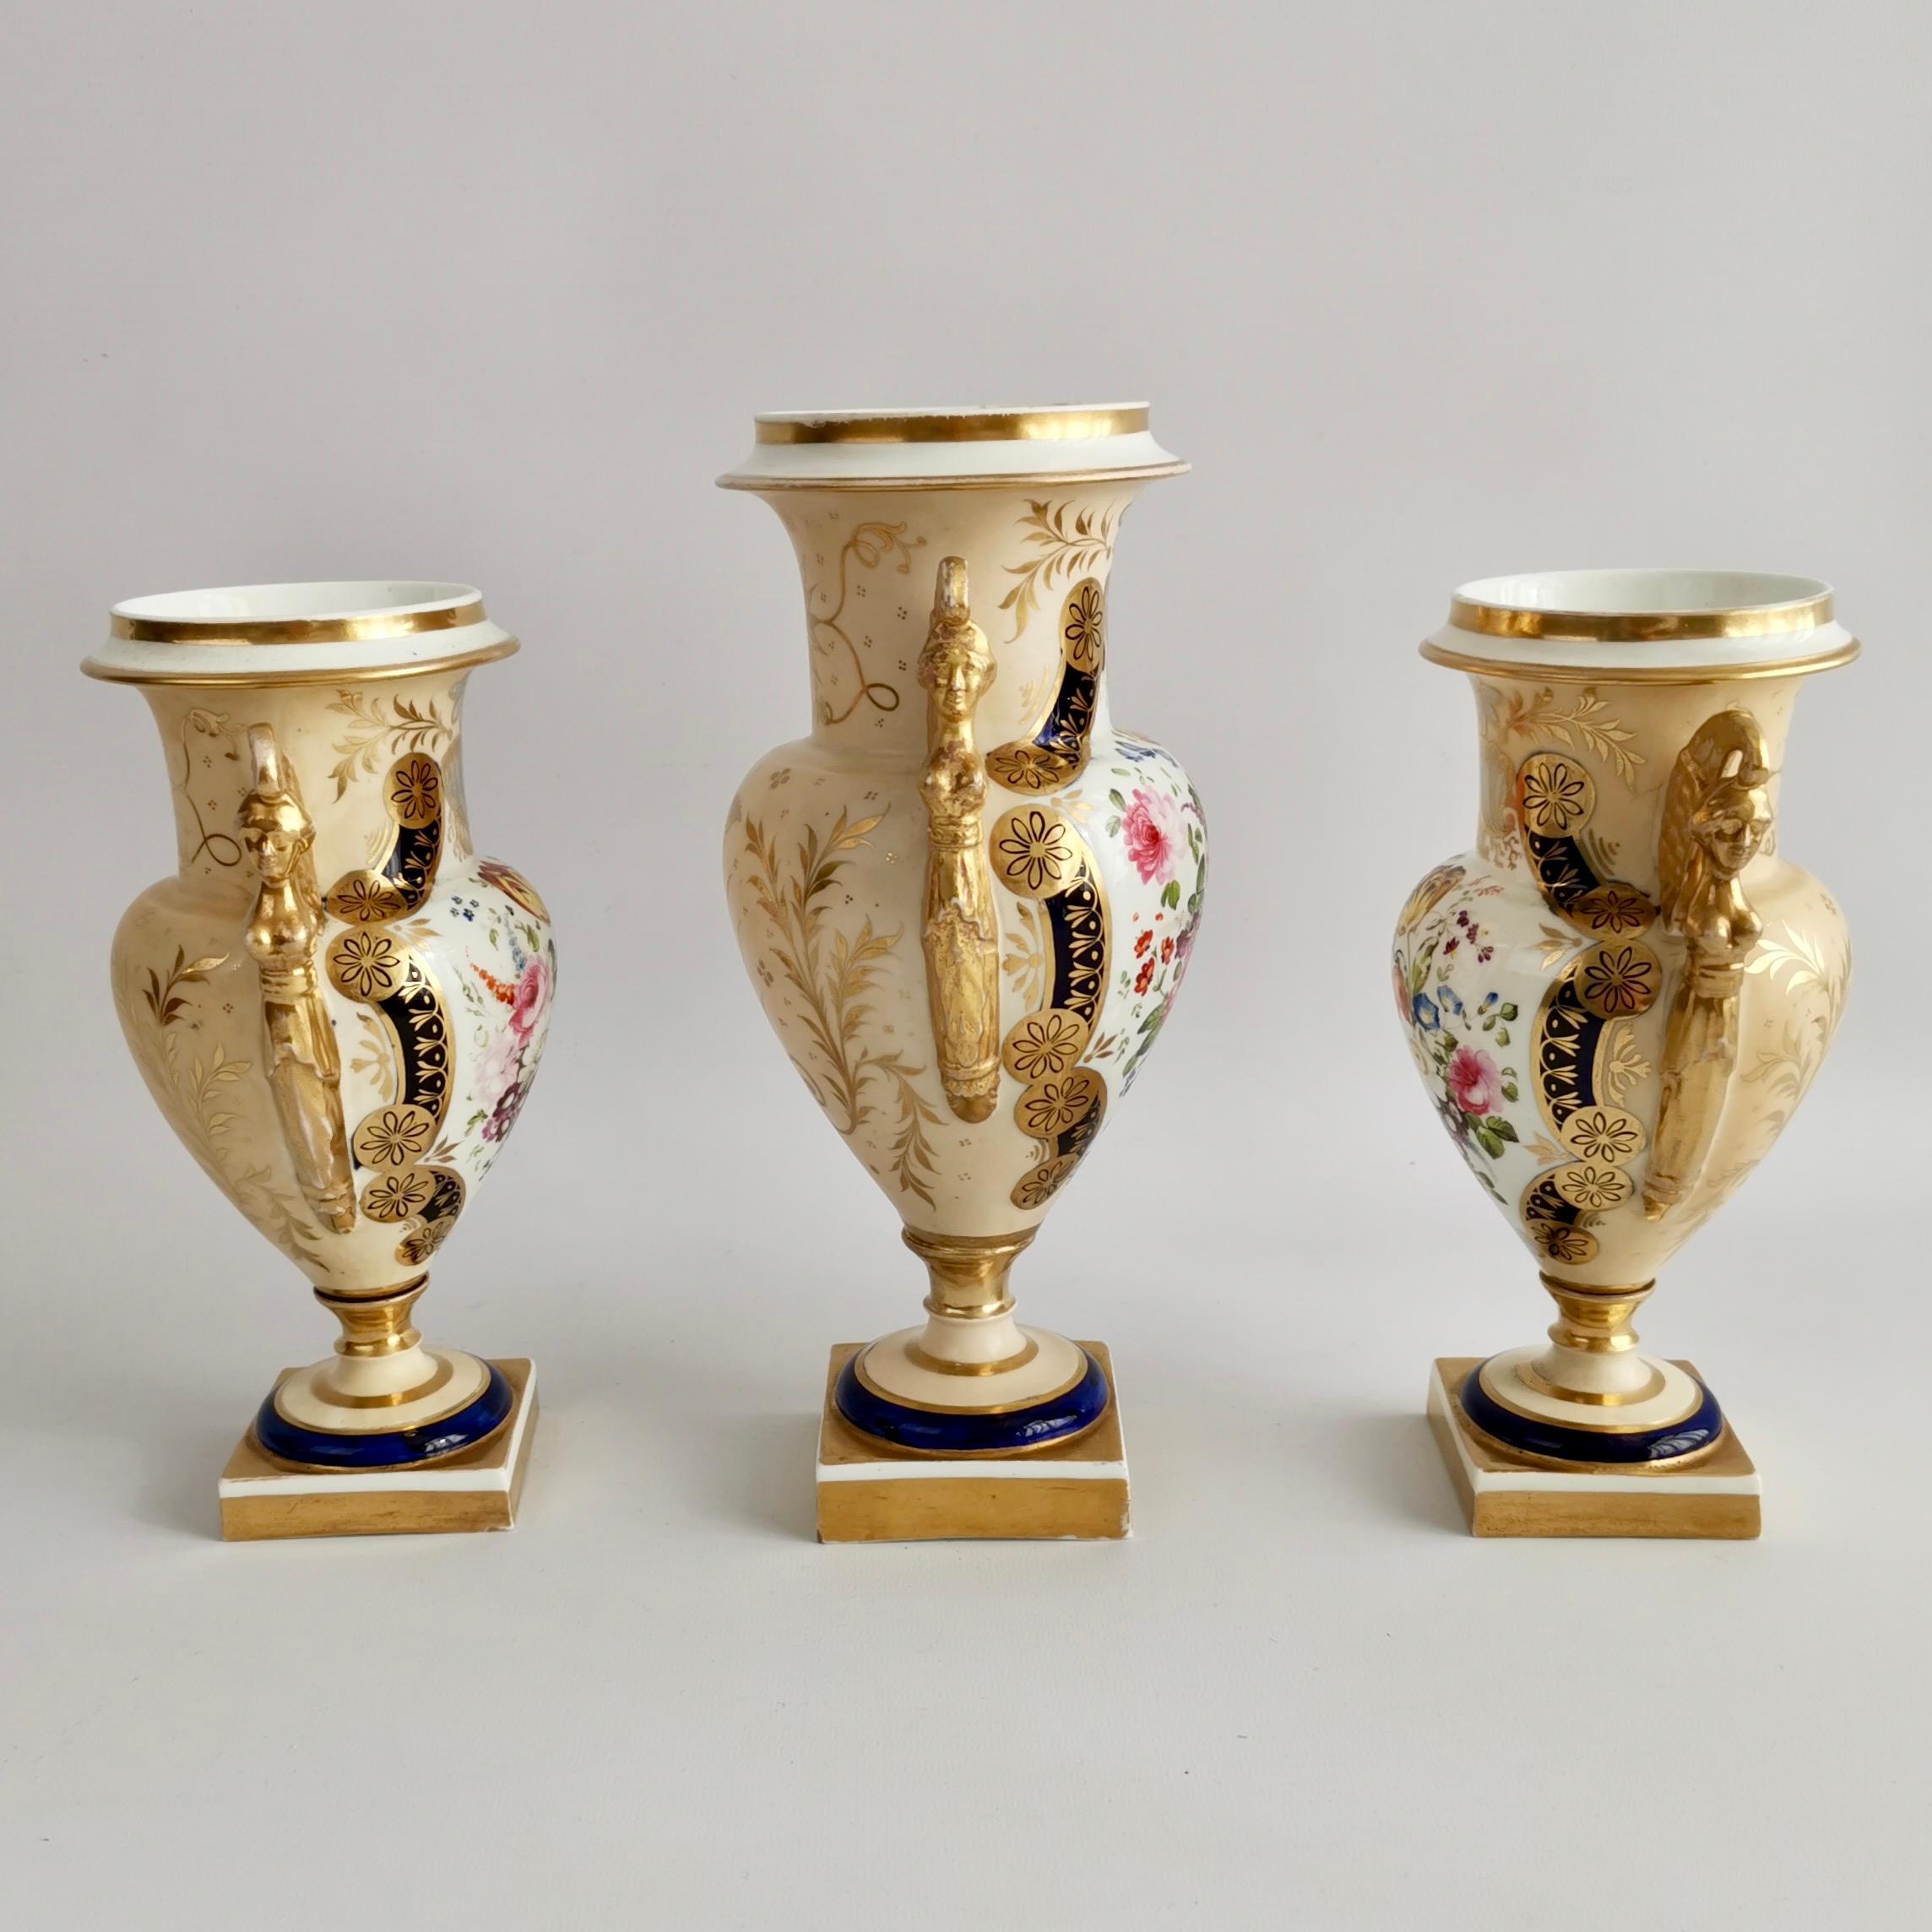 Es handelt sich um eine spektakuläre Garnitur aus drei Vasen, die zwischen 1810 und 1815 in einer englischen Fabrik hergestellt wurde. Die Vasen sind im französischen Empire-Stil gefertigt, haben stark vergoldete ägyptische Karyatidengriffe,